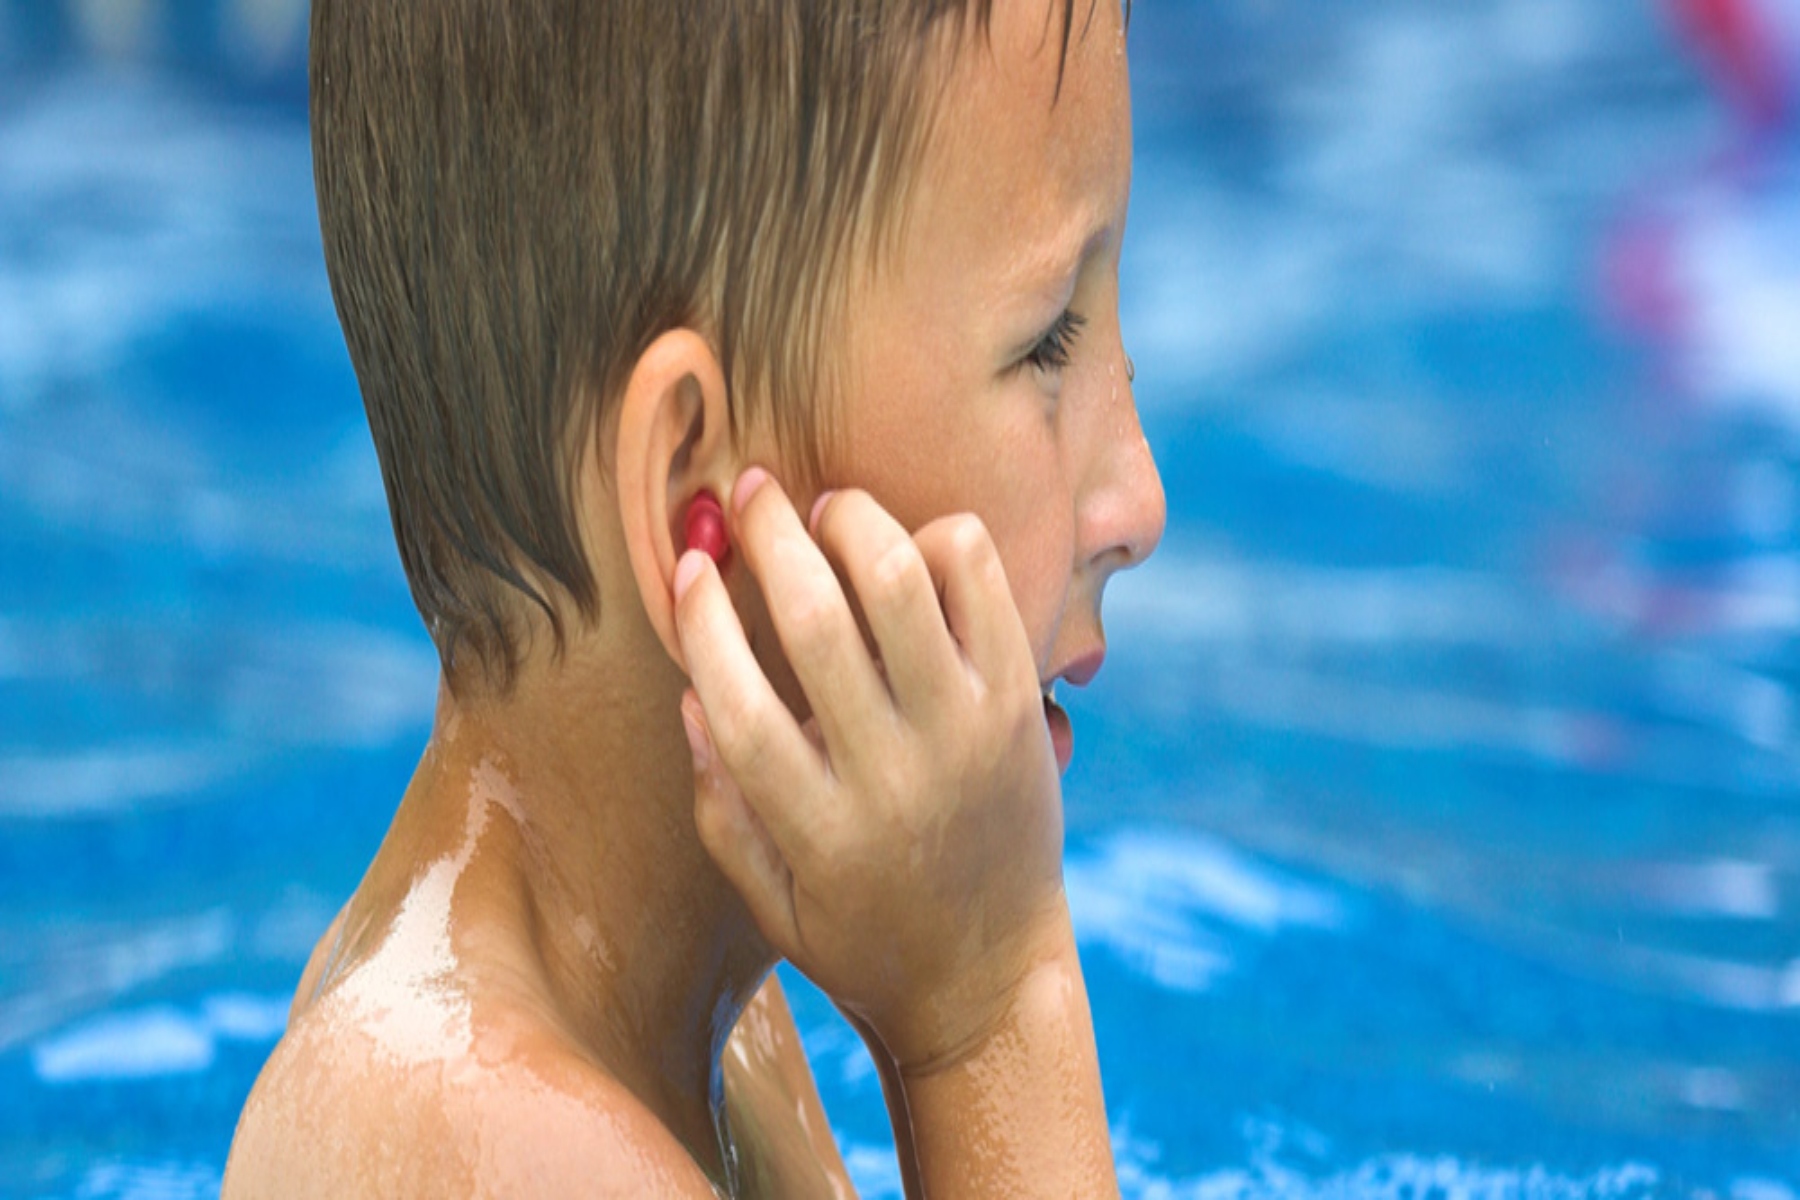 Κολυμβητές αυτιά: Κοινά προβλήματα αυτιών στους κολυμβητές